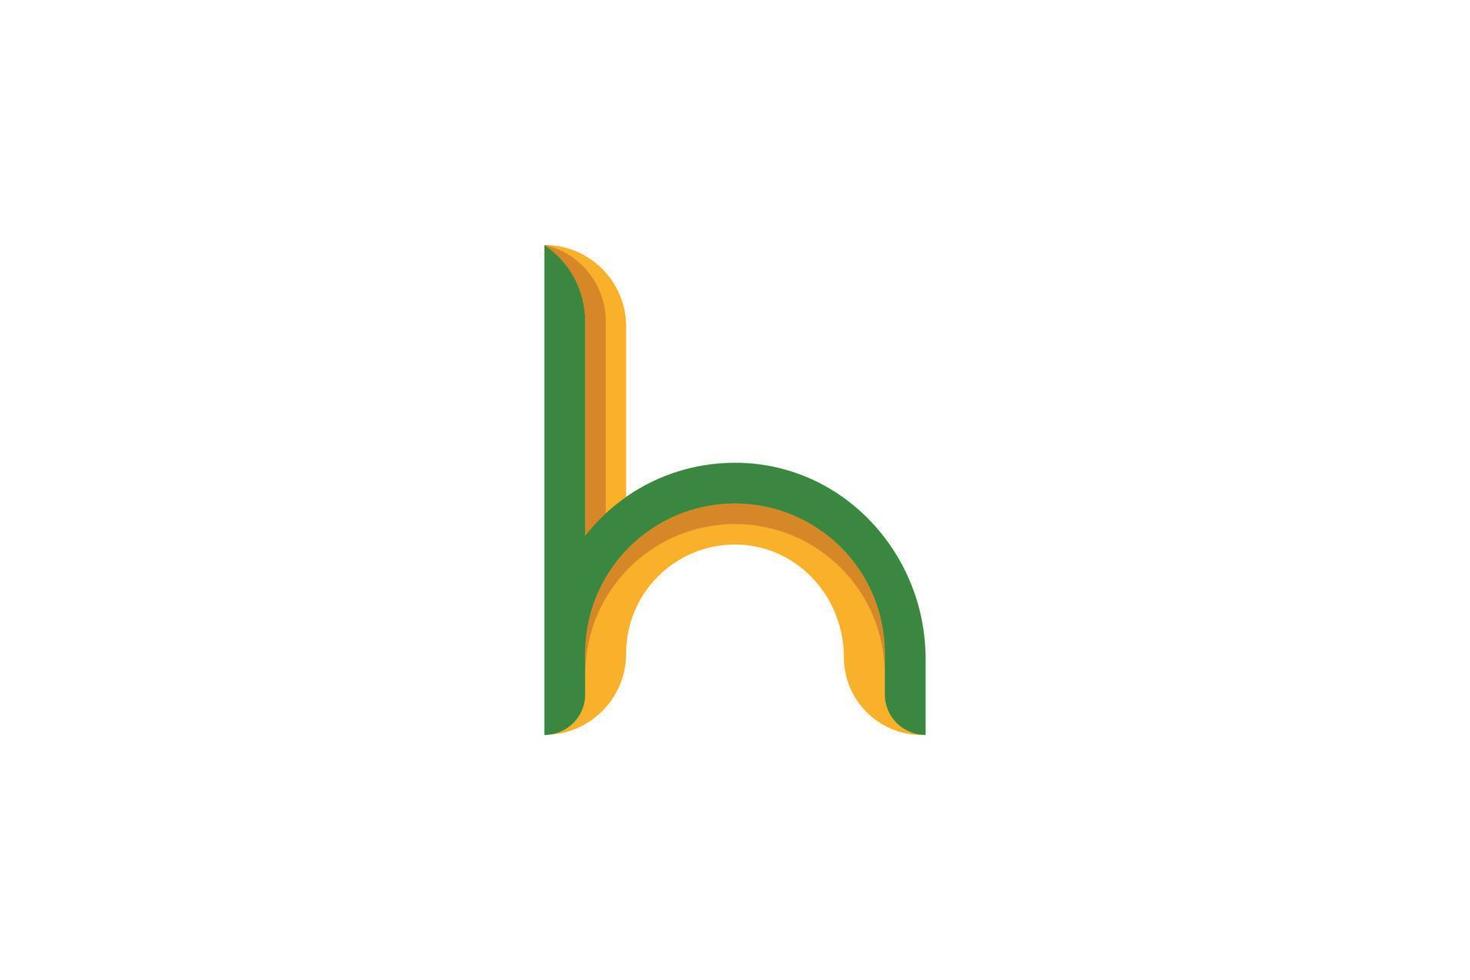 logotipo colorido de la letra h vector